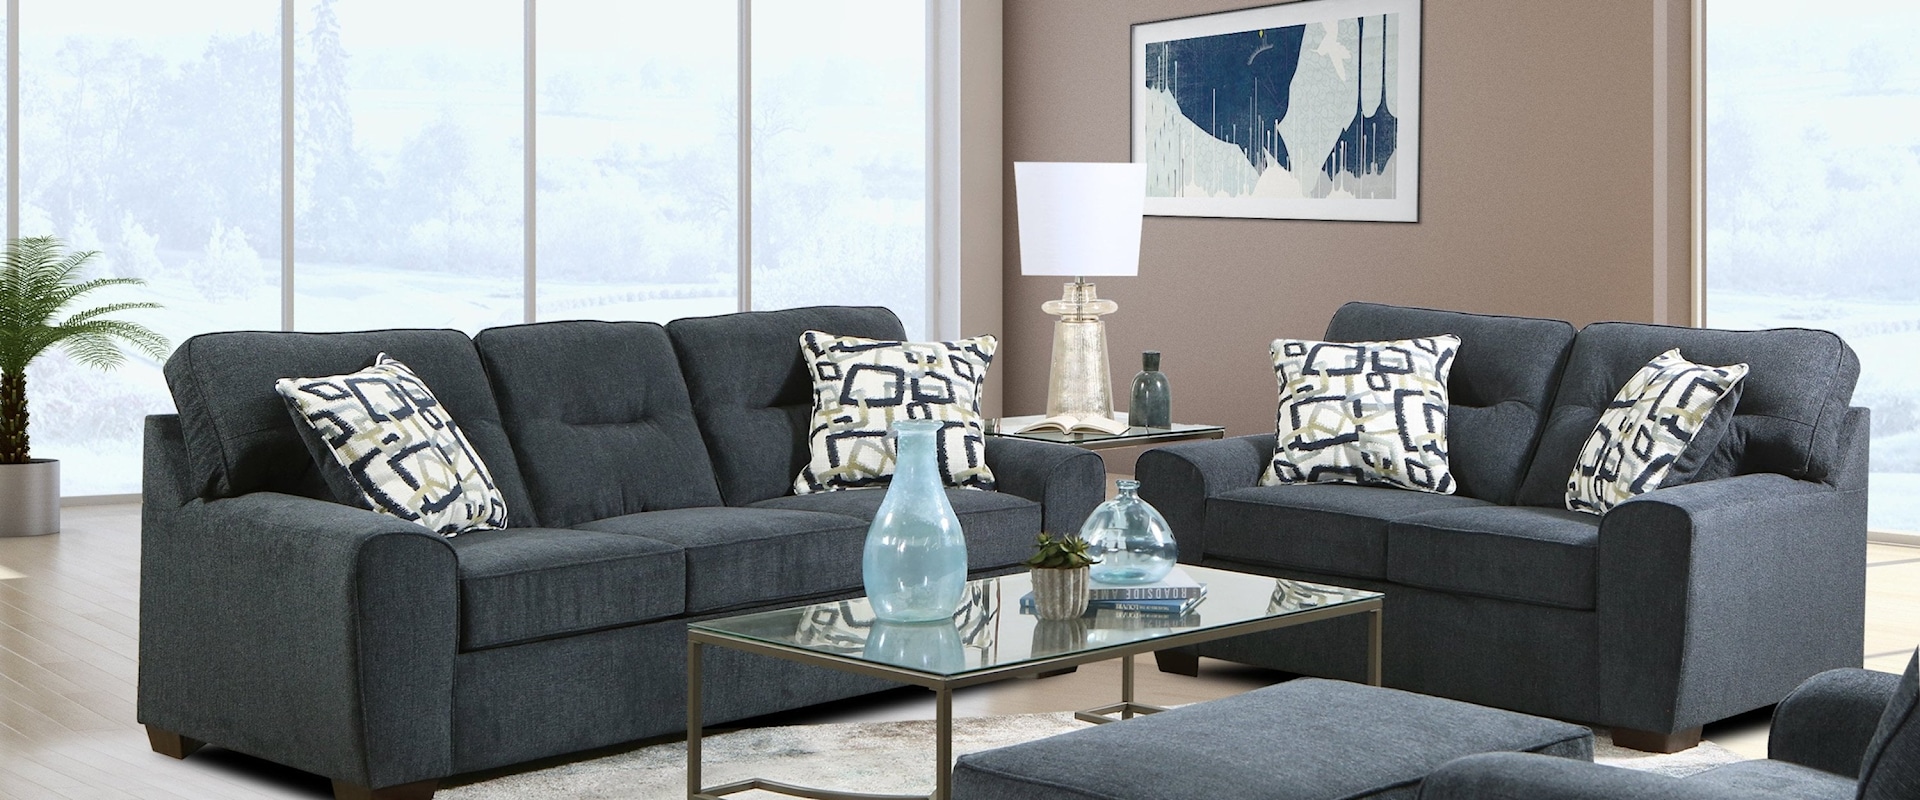 Renzo 4-Piece Contemporary Living Room Set